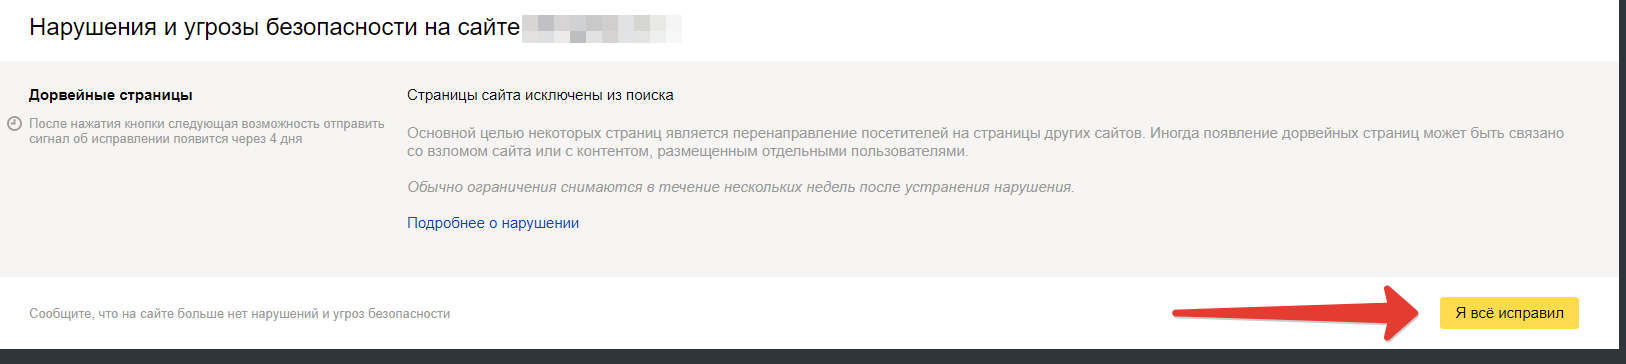 Исправление нарушения в Вебмастере Яндекса